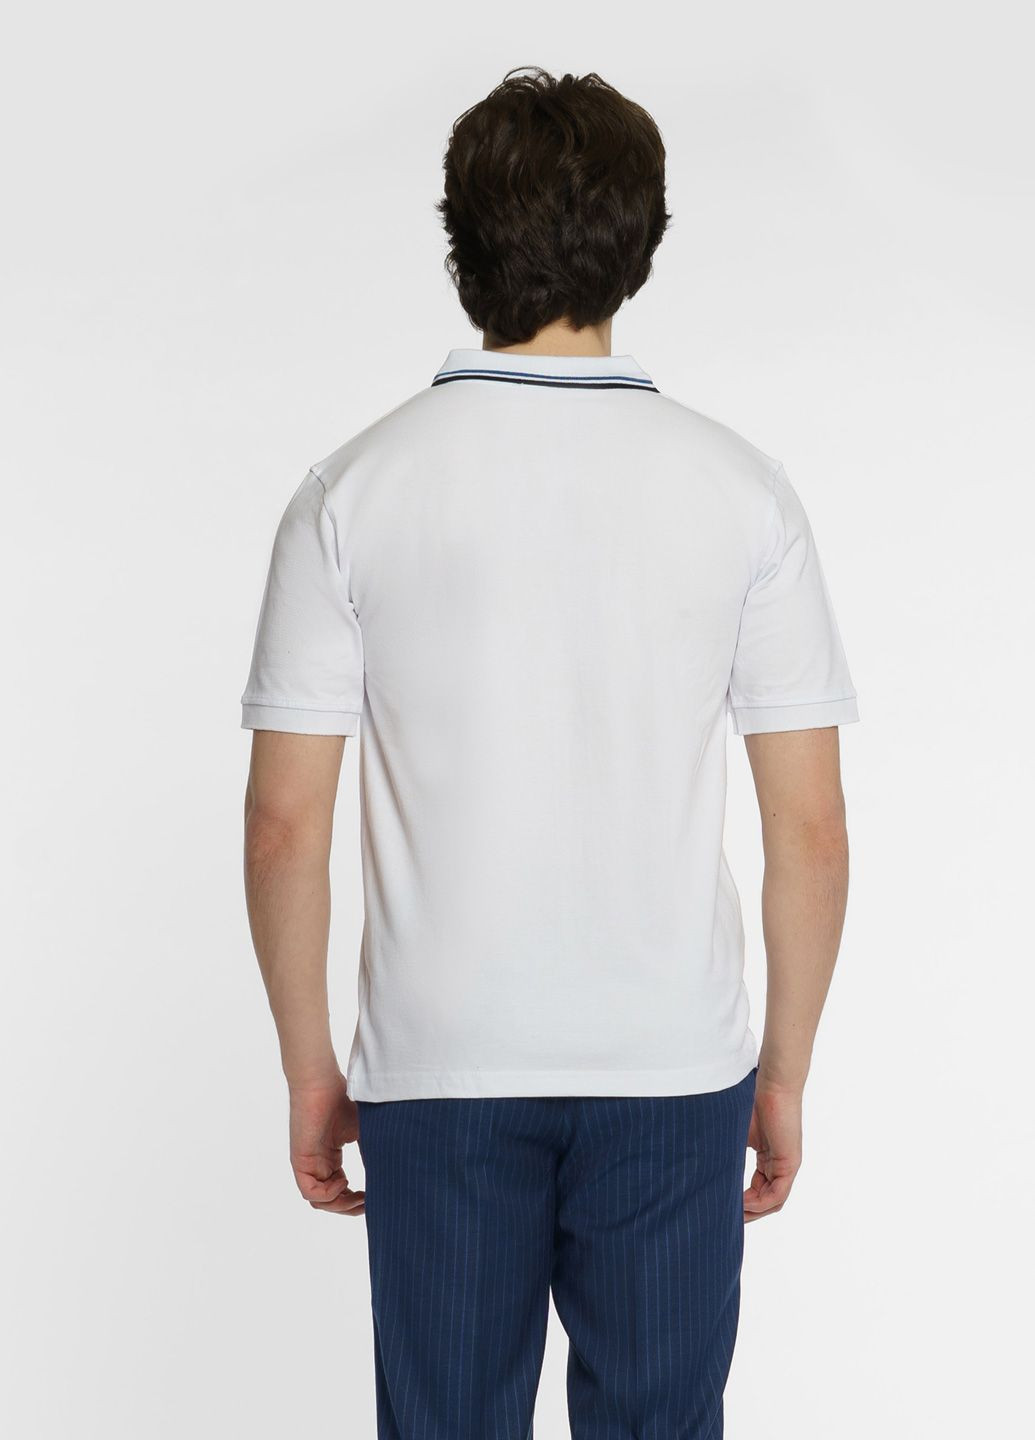 Белая футболка-поло мужское белое для мужчин Arber